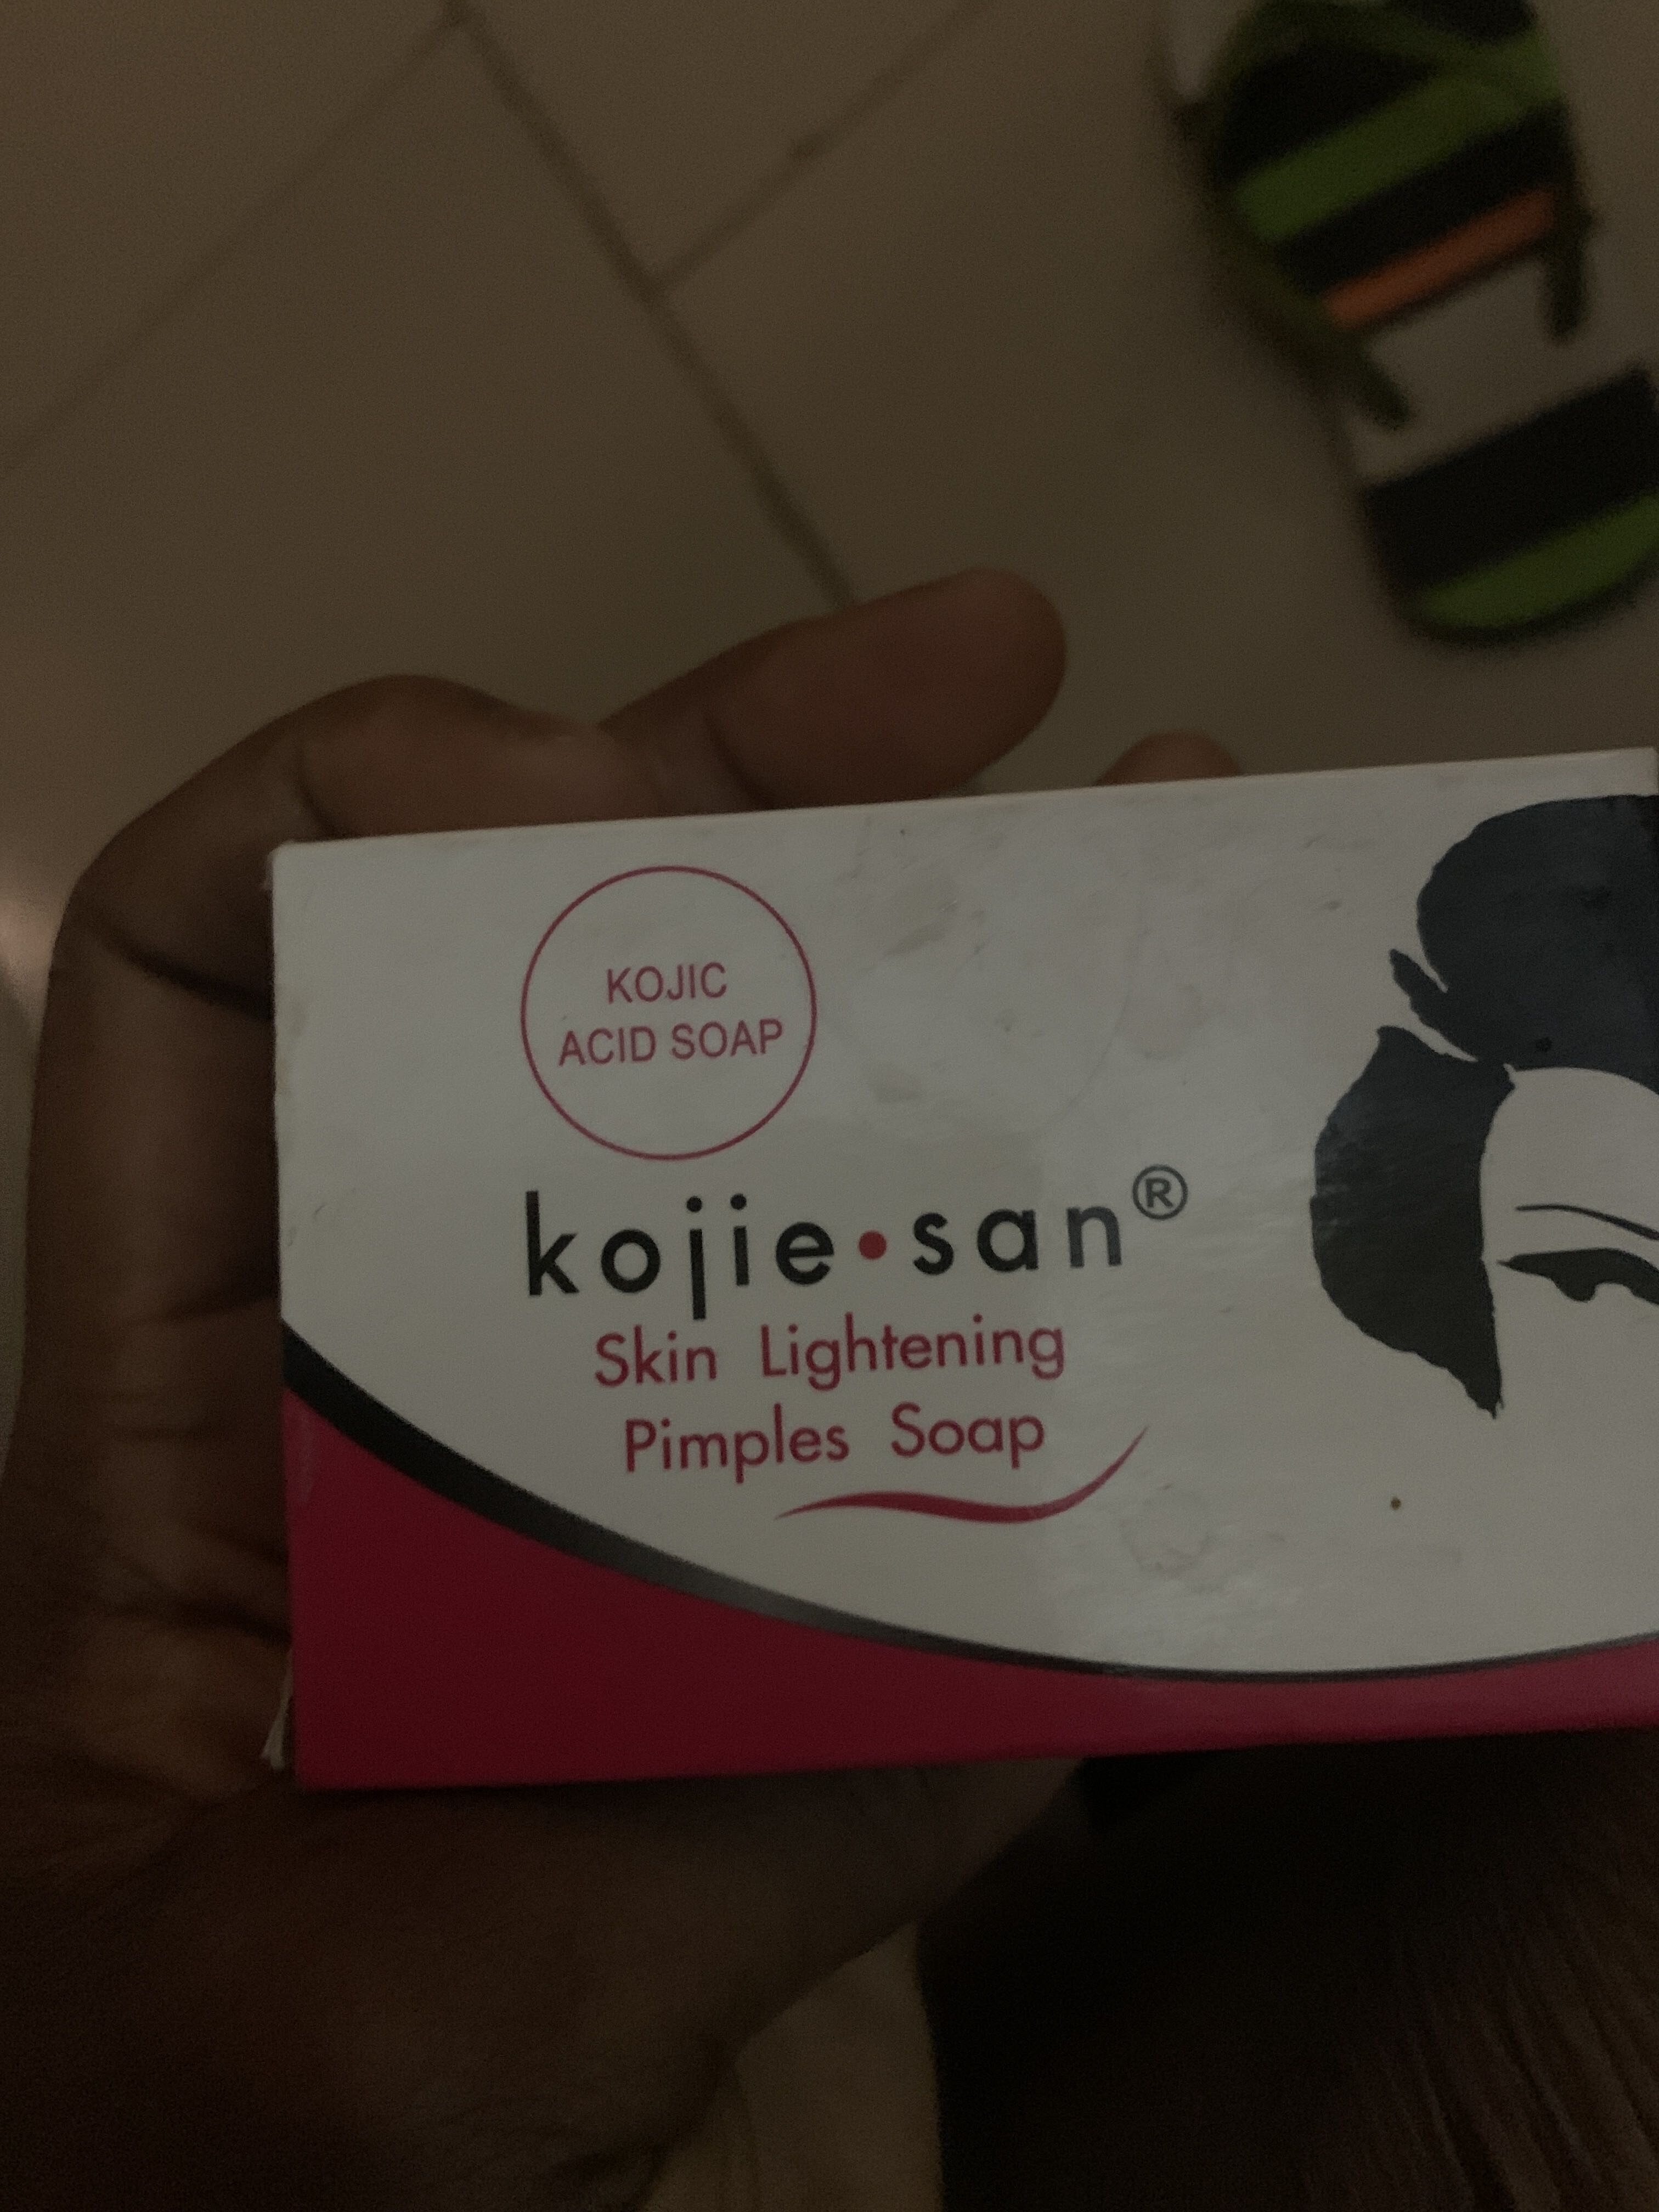 Kojie San skin lightening pimples soap - Tuote - en